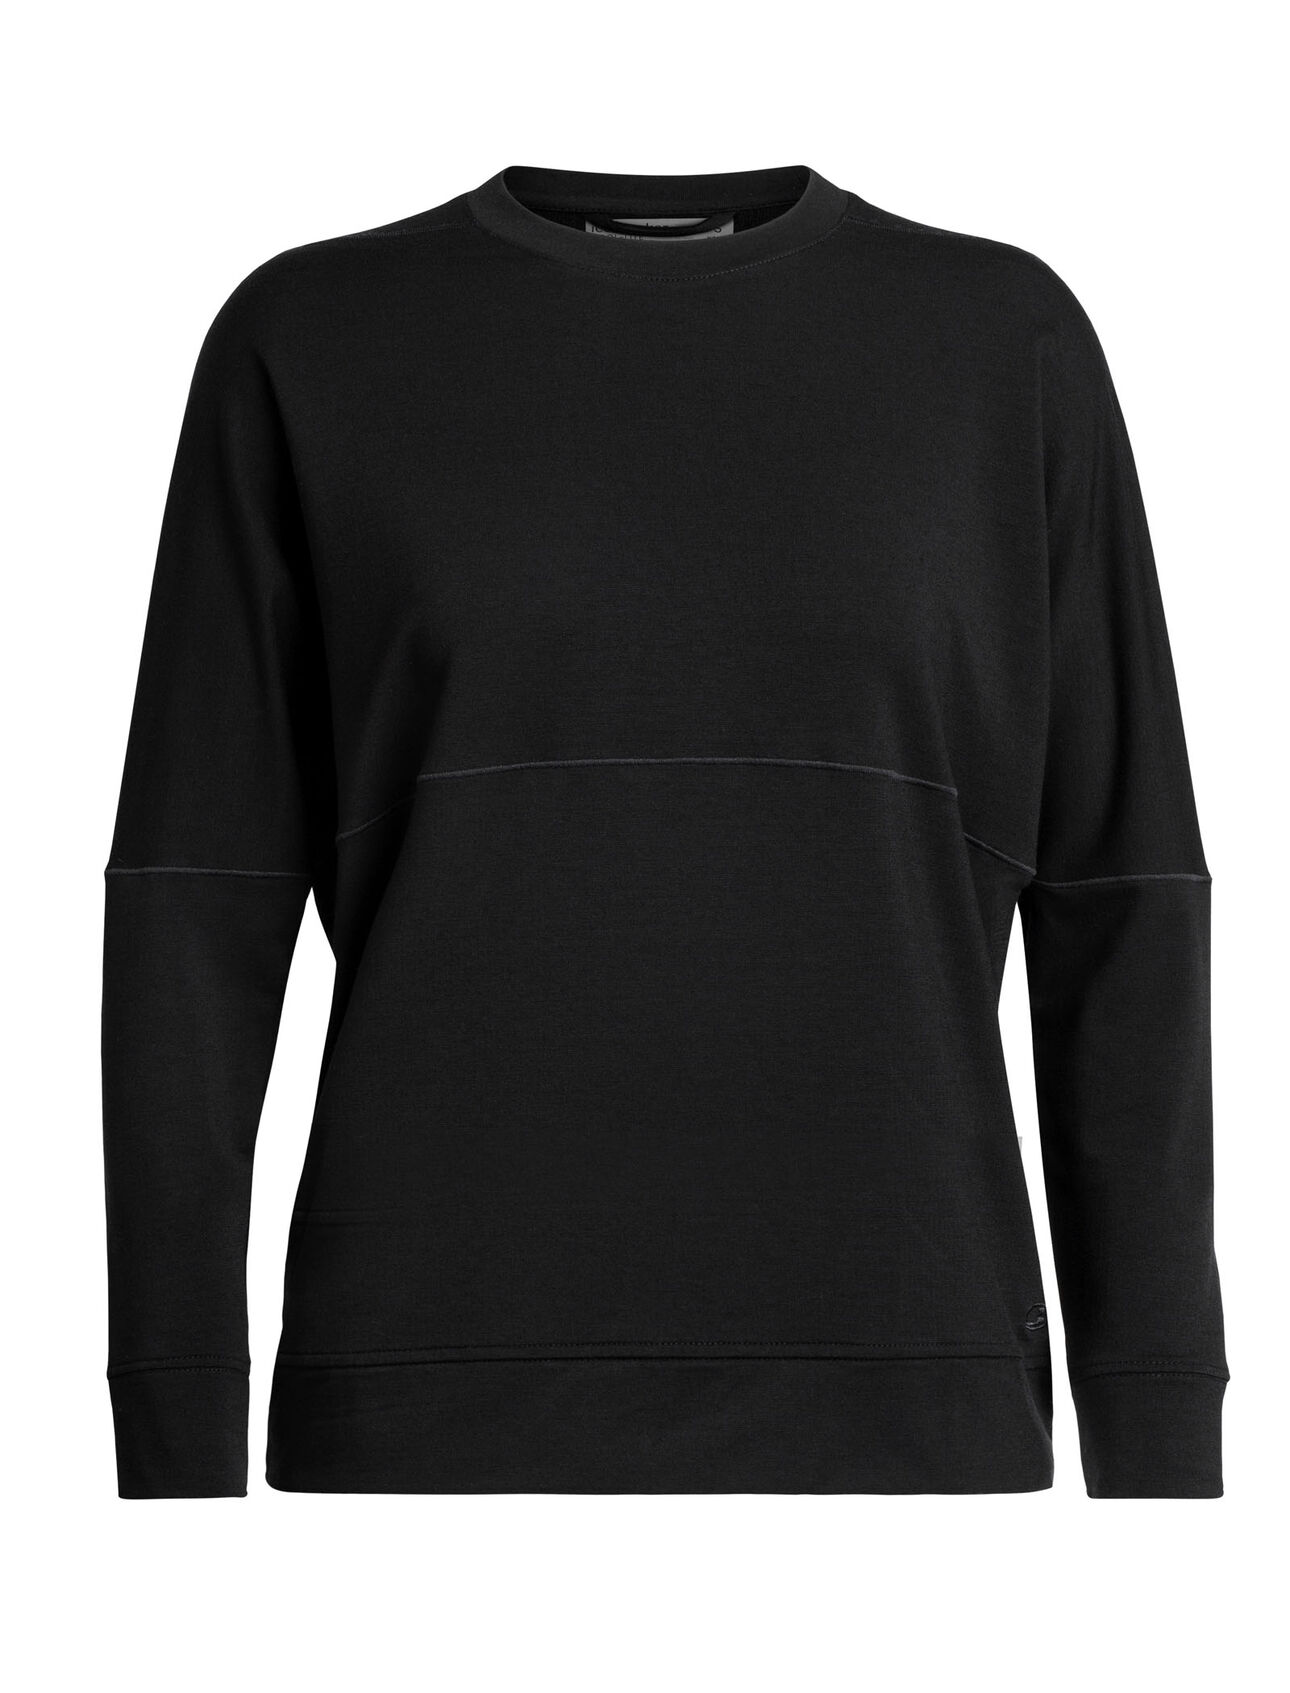 Cool-Lite™ Momentum långärmad sweatshirt i merino med rund halsringning